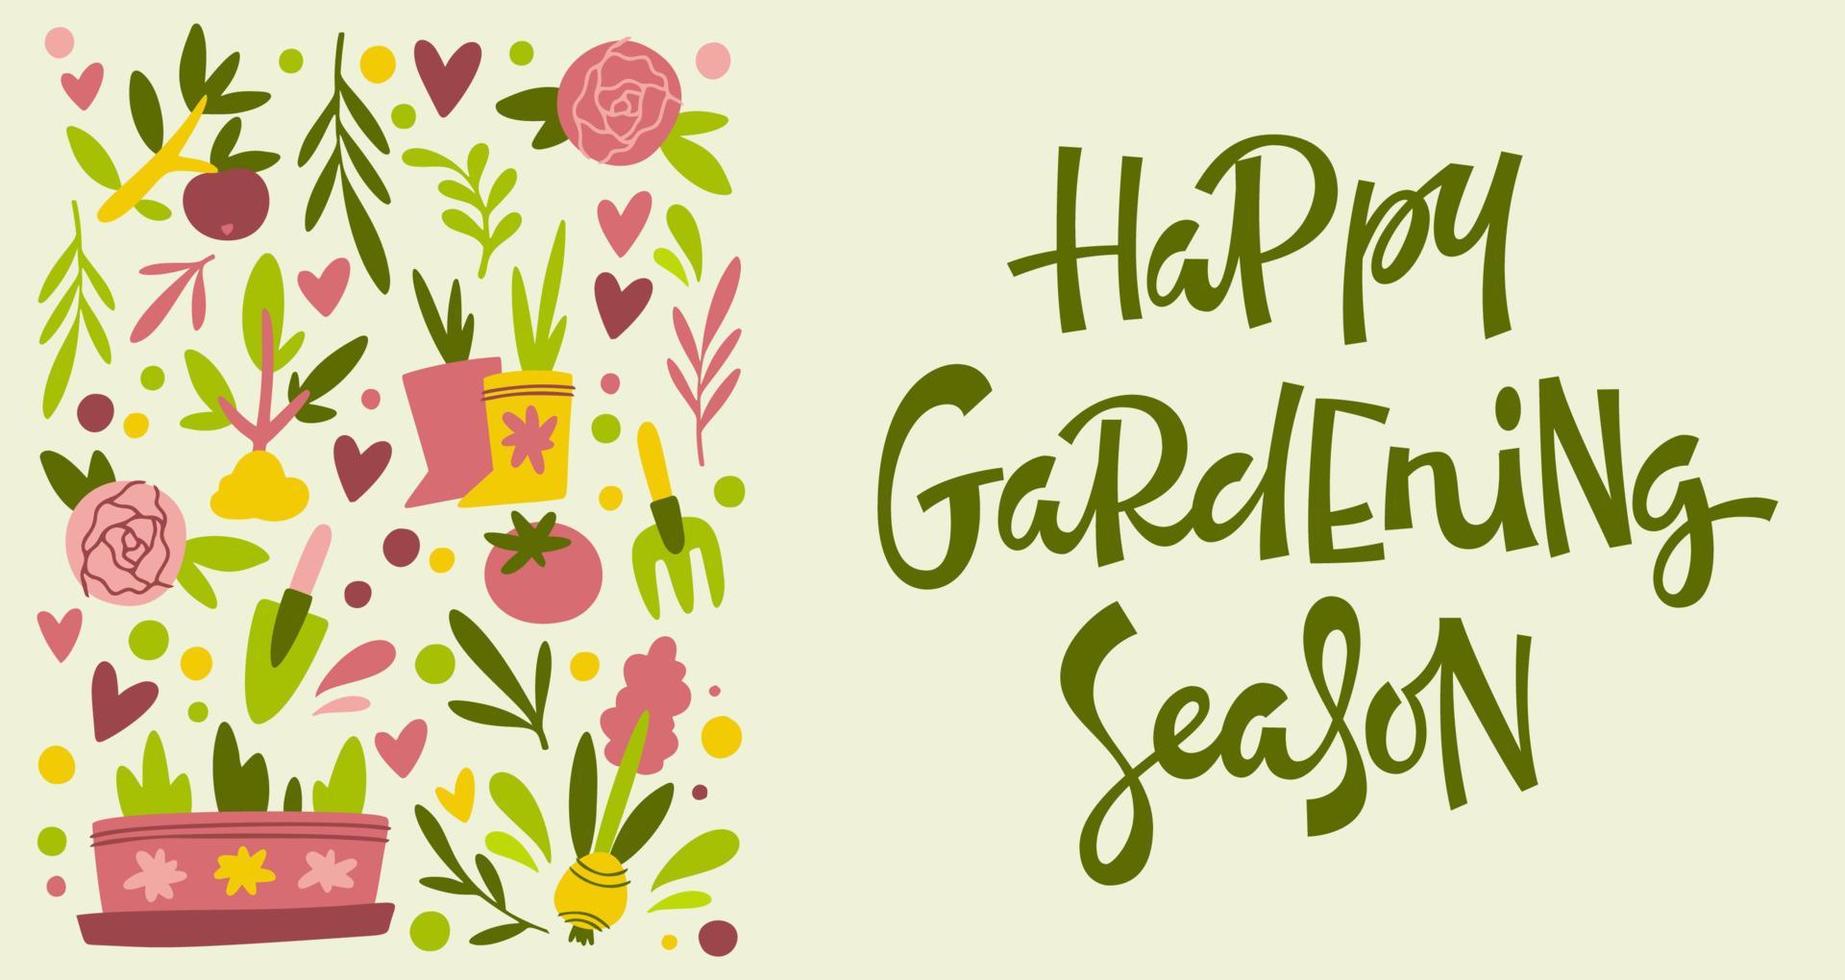 cartaz com texto de temporada de jardinagem feliz vetor